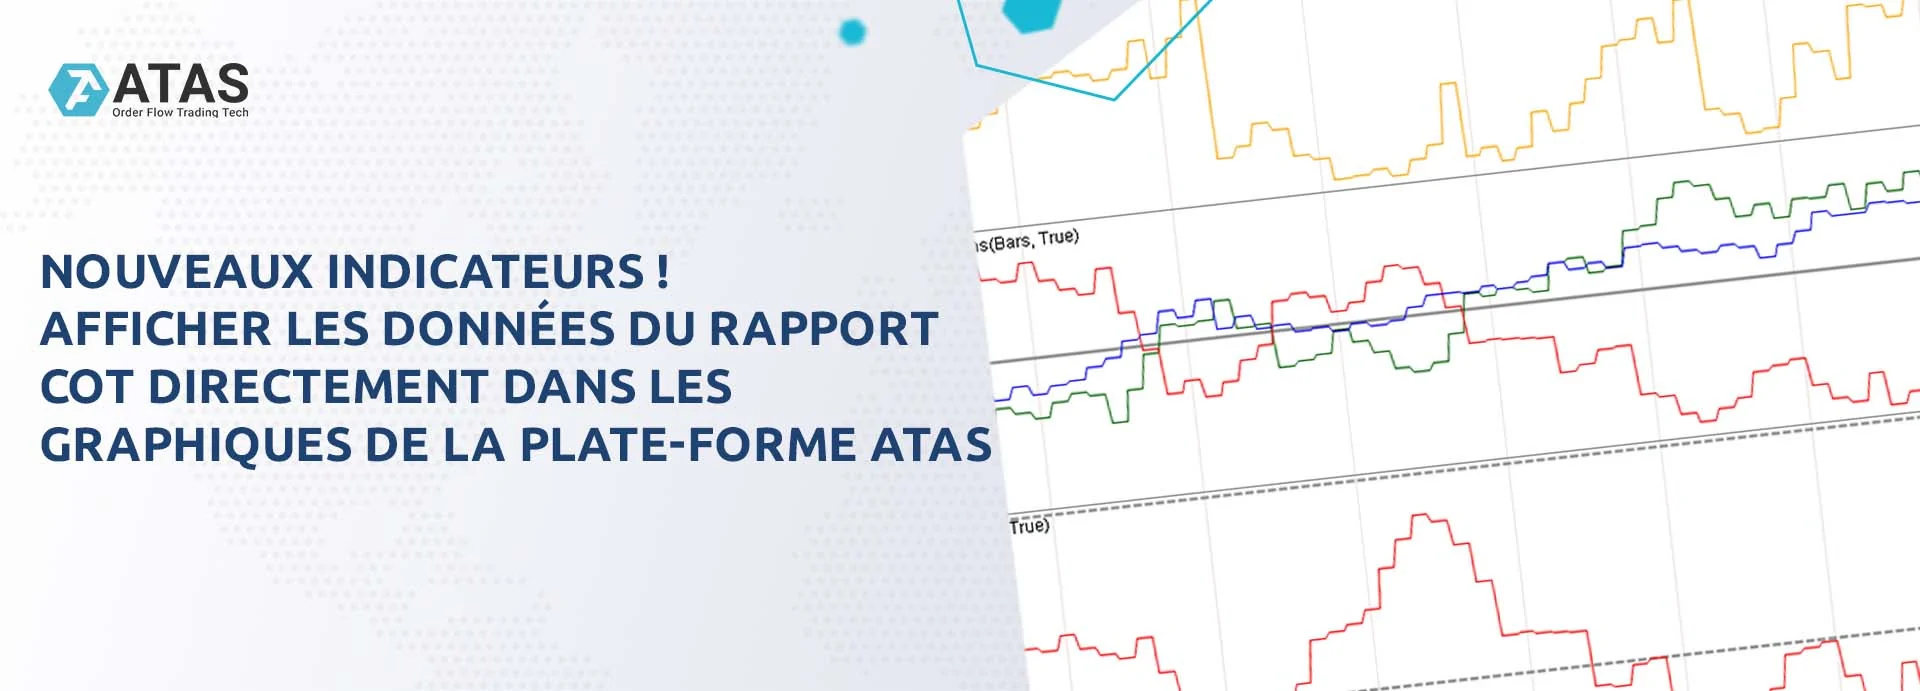 Nouveaux indicateurs ! Afficher les données du rapport COT directement dans les graphiques de la plate-forme ATAS